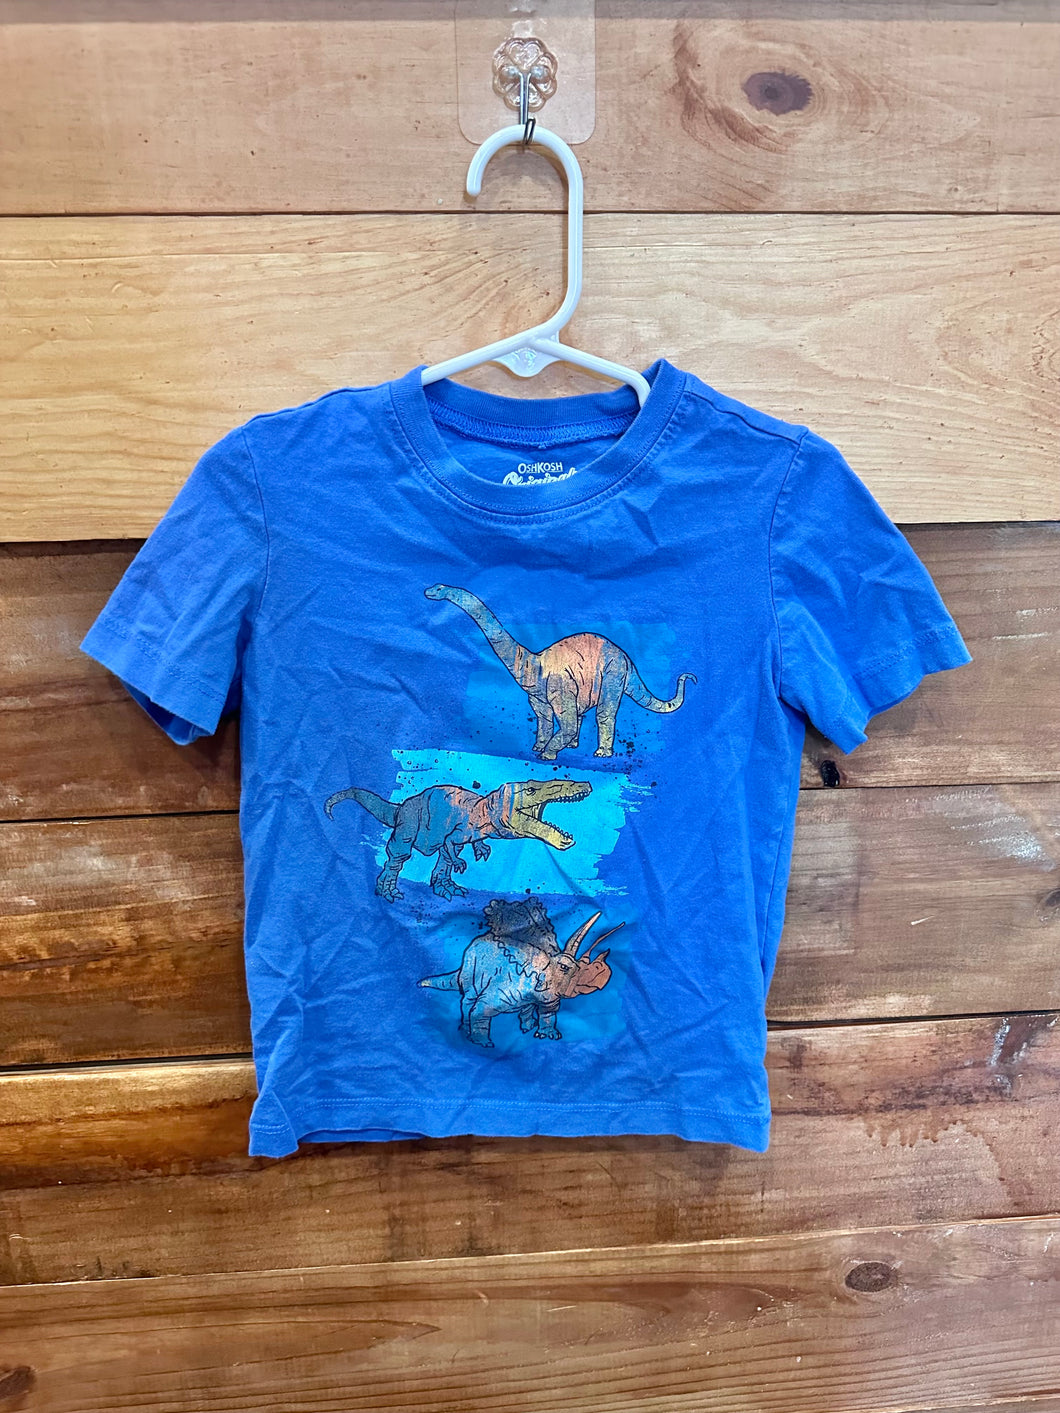 Osh Kosh Blue Dino Shirt Size 4T